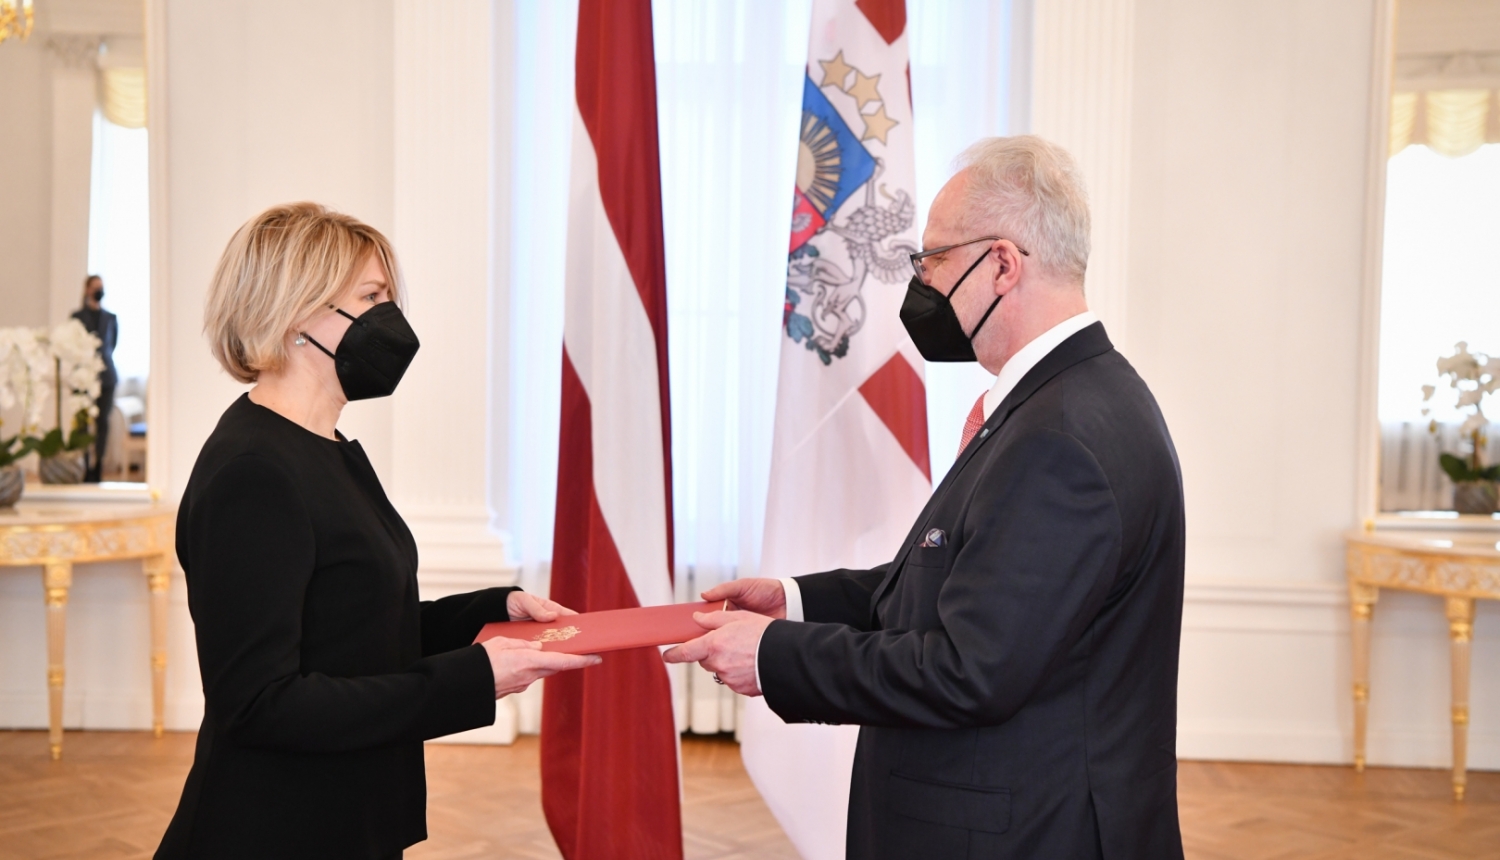 Valsts prezidents Egils Levits pasniedz akreditācijas vēstuli Ievai Briedei, Latvijas Republikas vēstniecei Grieķijas Republikā